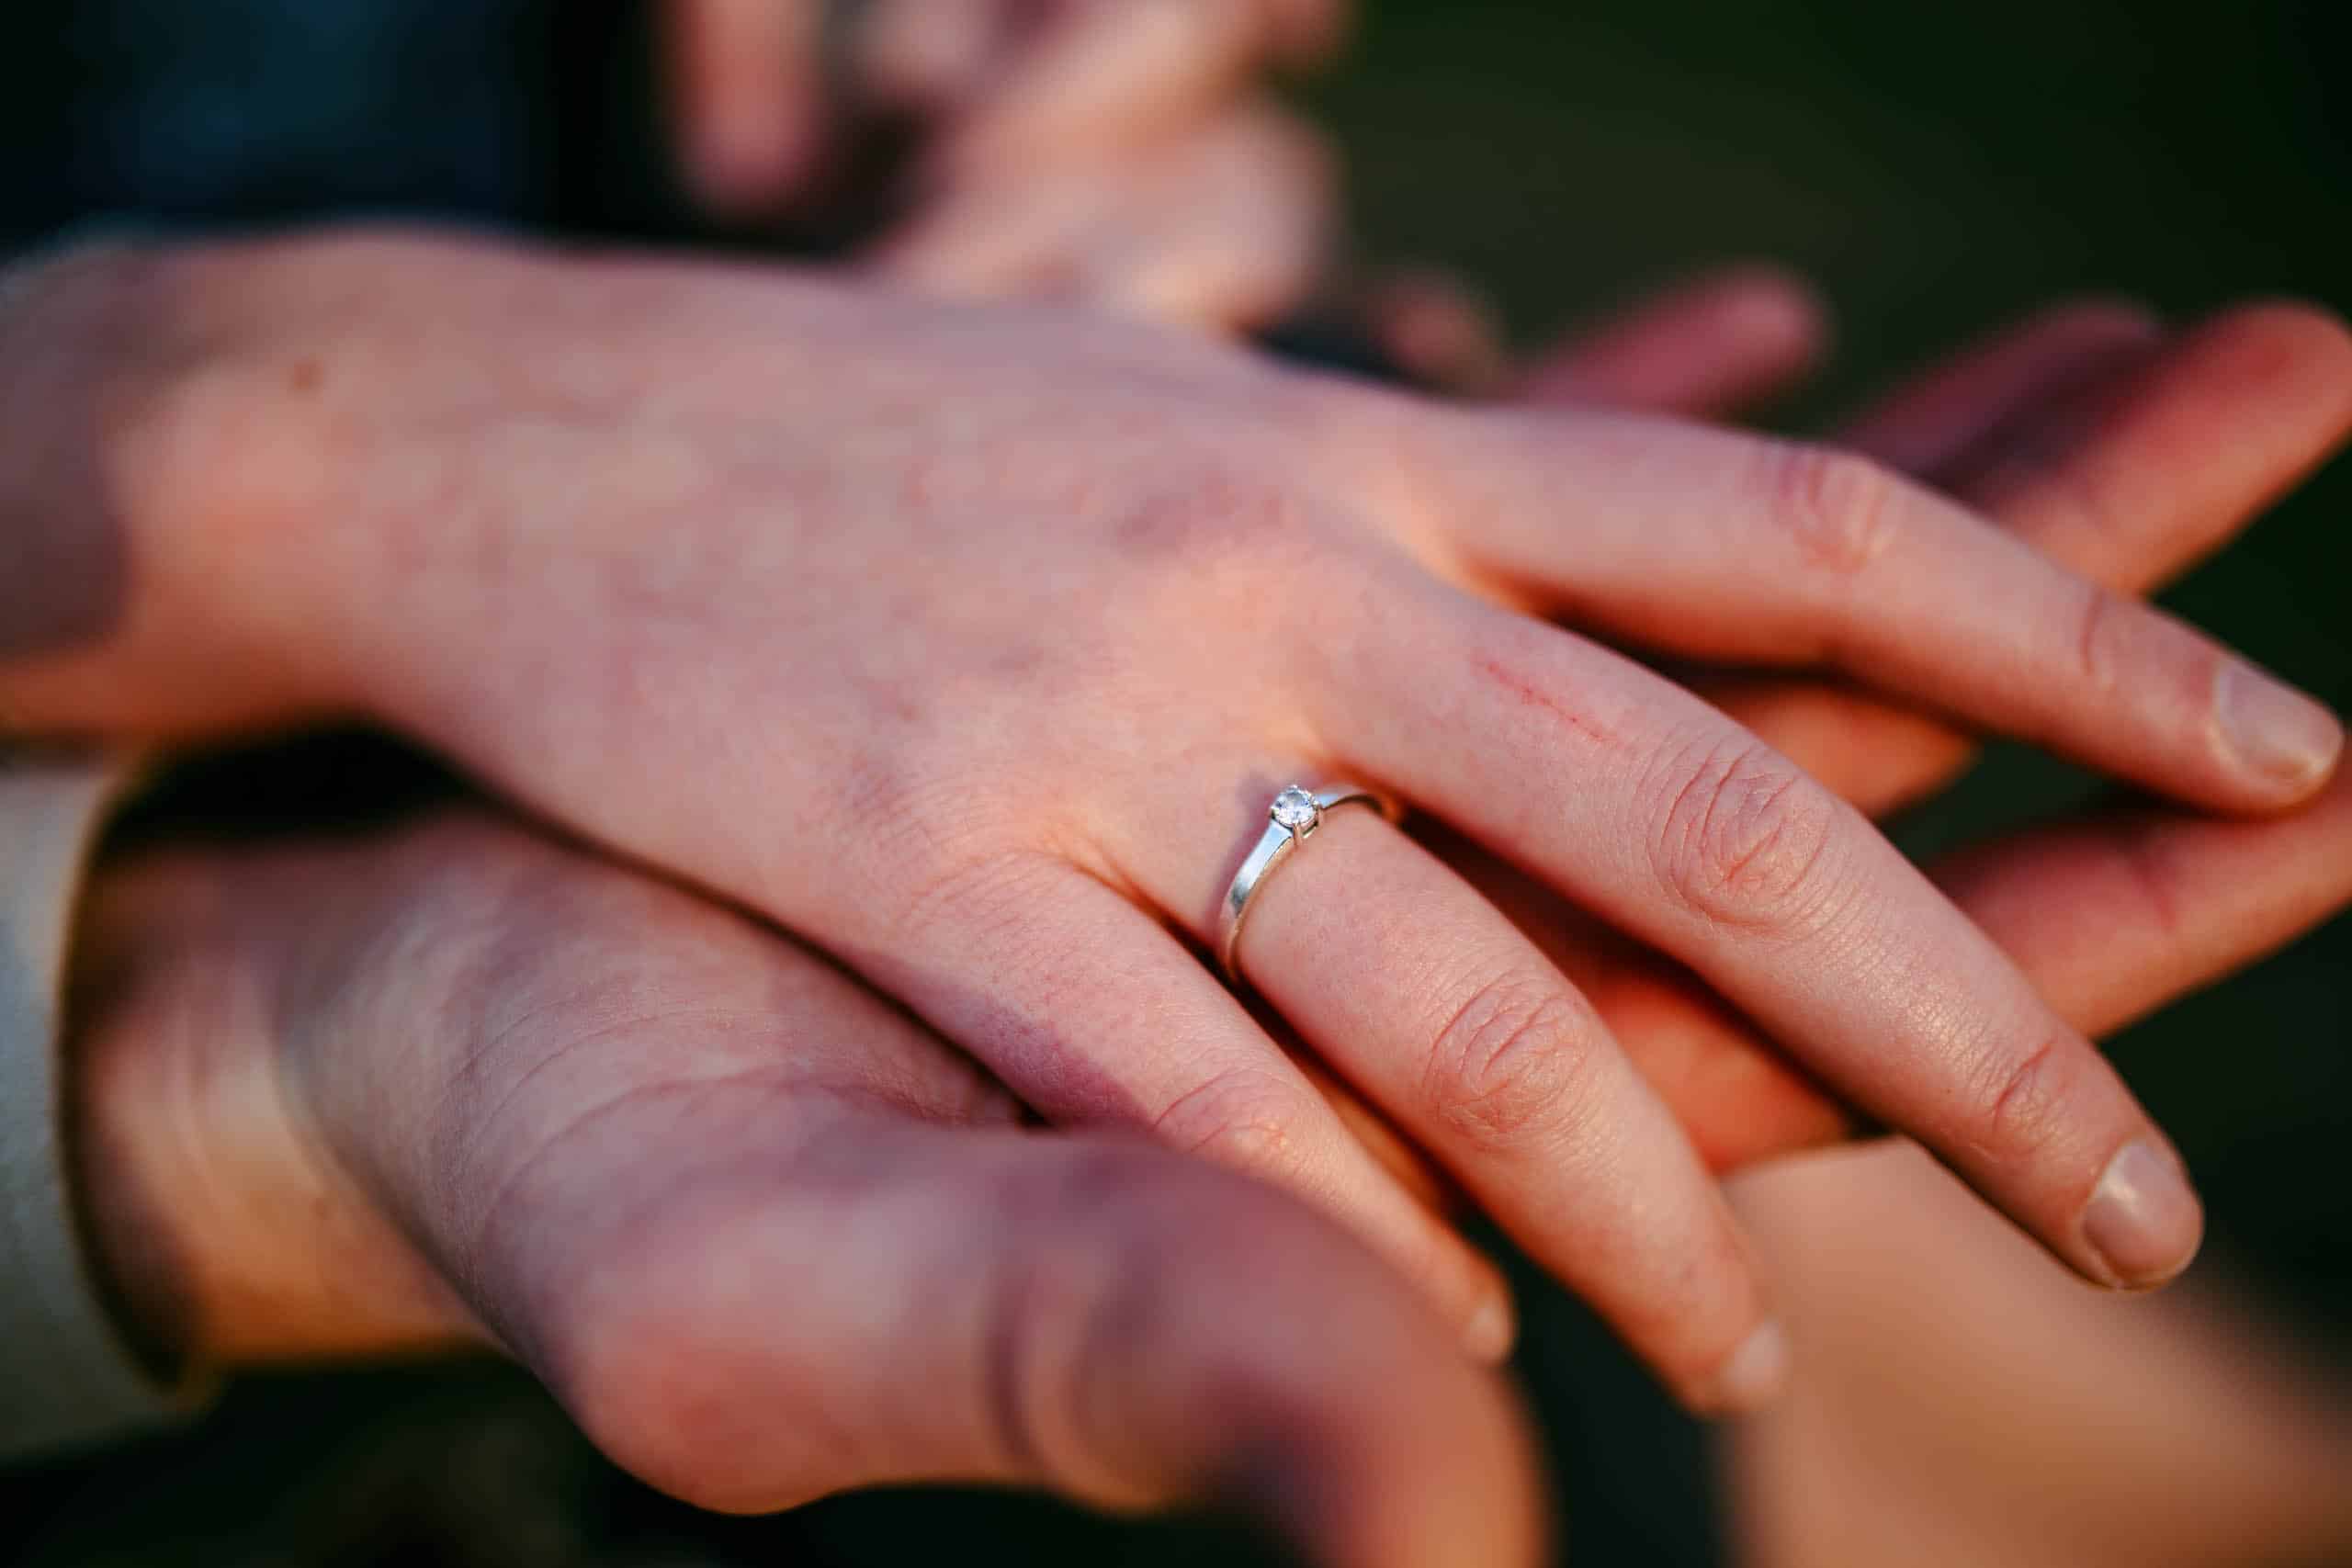 De handen van een stel houden een verlovingsring vast tijdens een romantisch aanzoek.